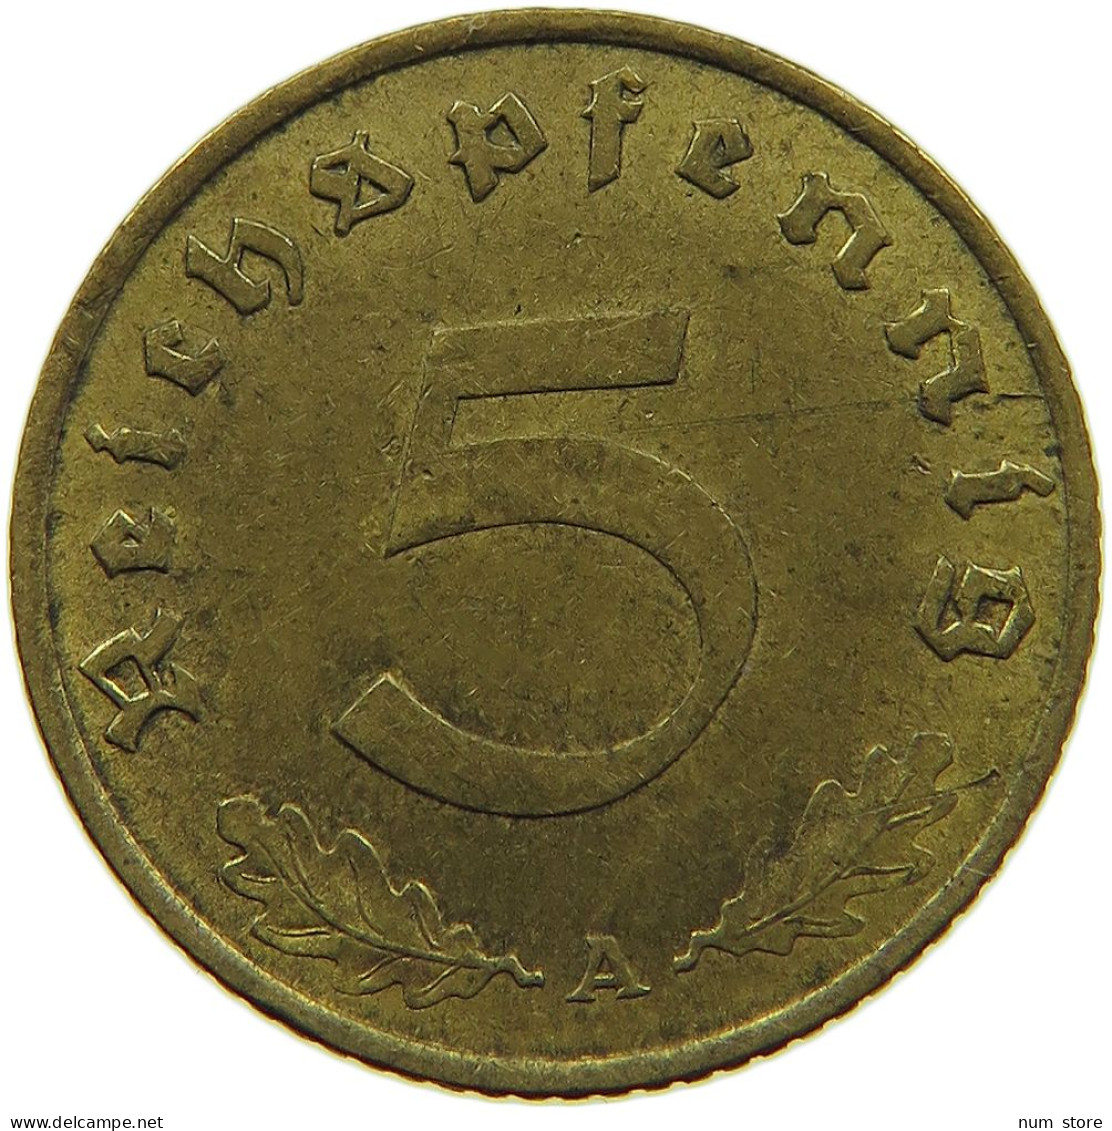 GERMANY 5 REICHSPFENNIG 1938 A #s091 0661 - 5 Reichspfennig